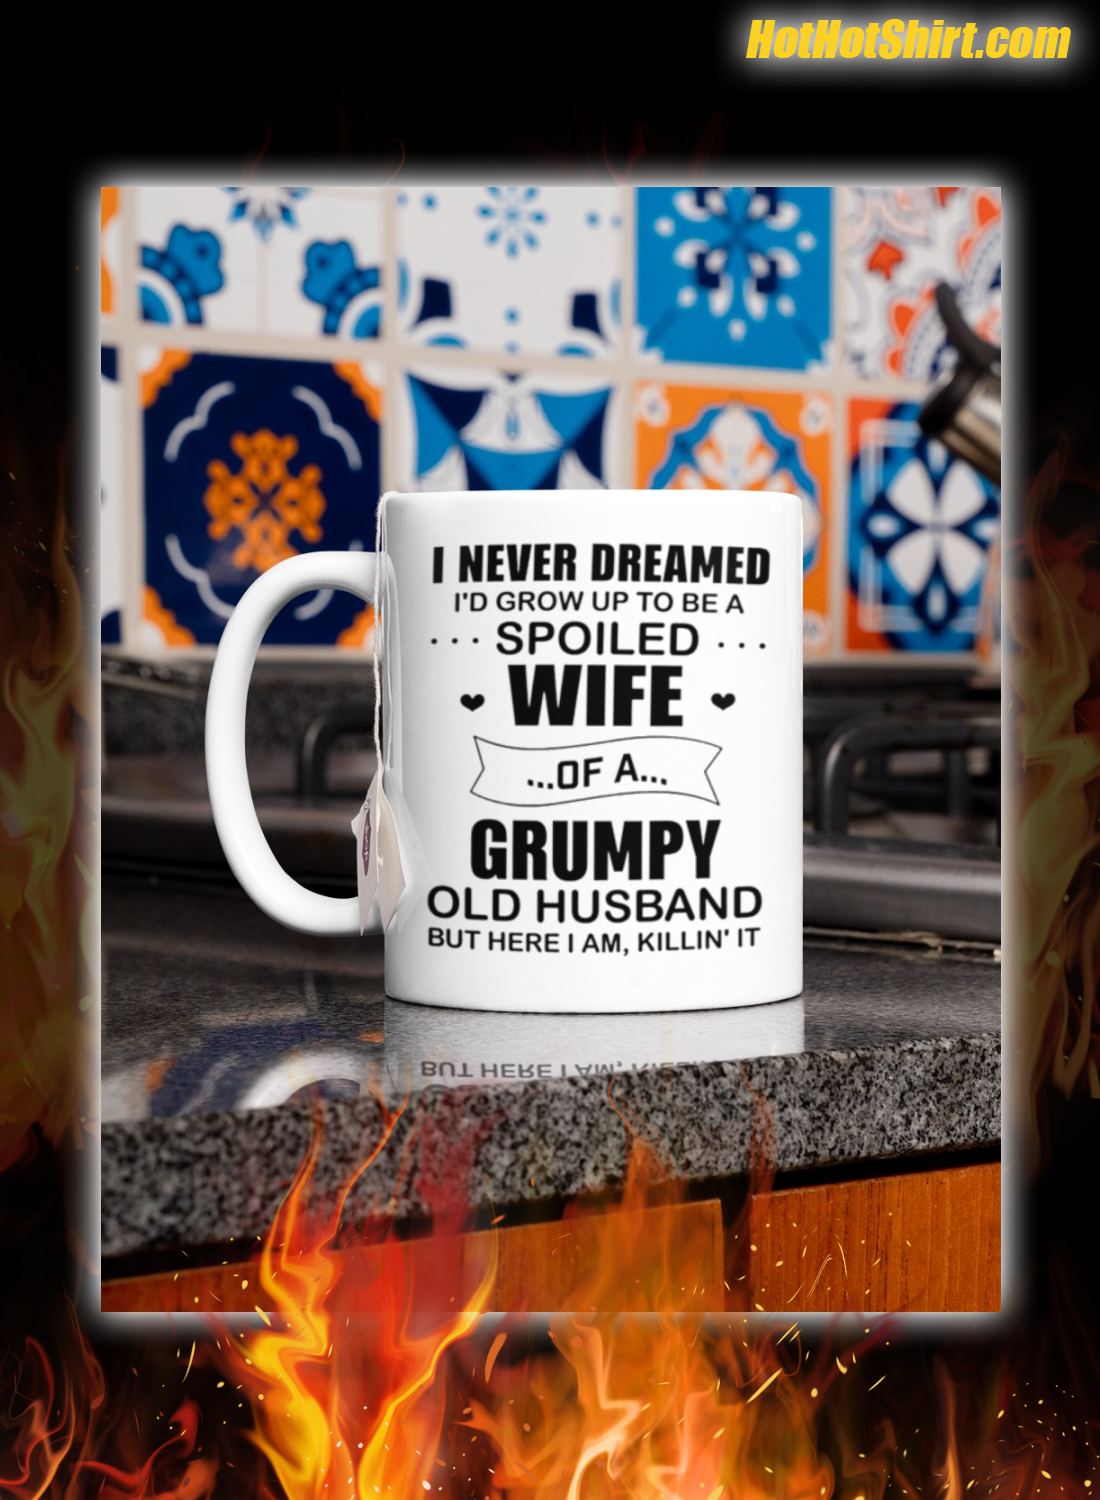 Grumpy old husband I never dreamed i’d grow up to be a spoiled wife mug